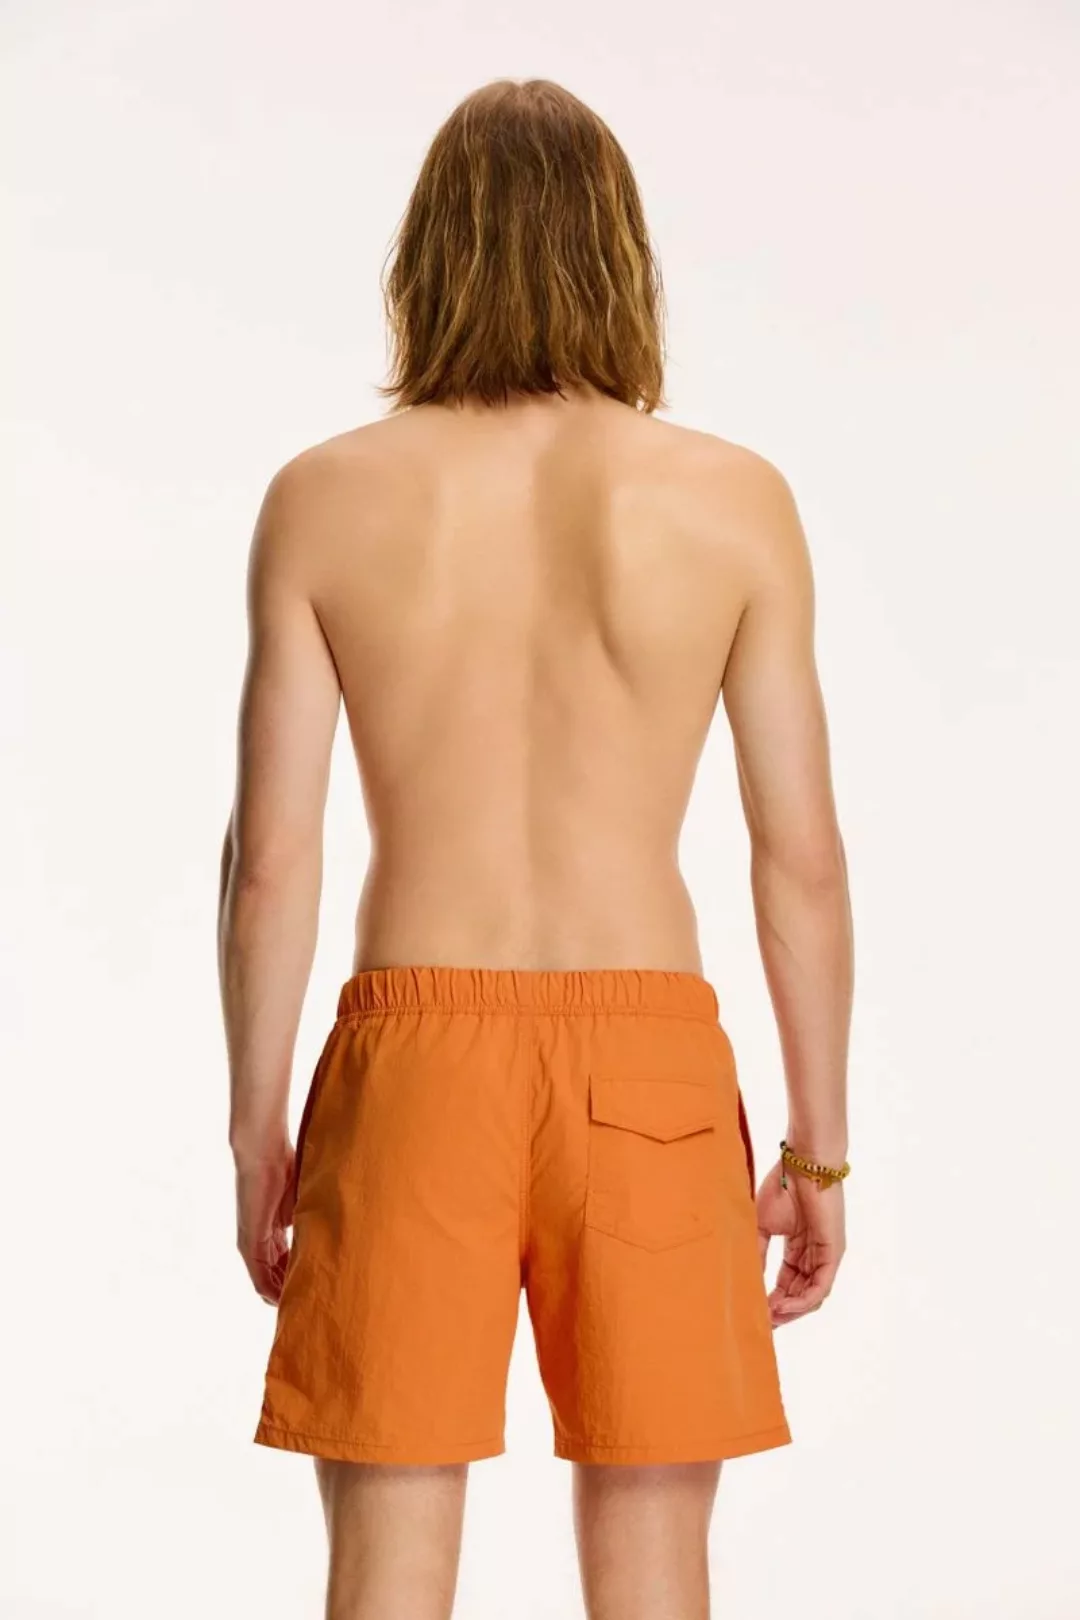 Shiwi Badeshorts Nick Desert Orange - Größe XL günstig online kaufen